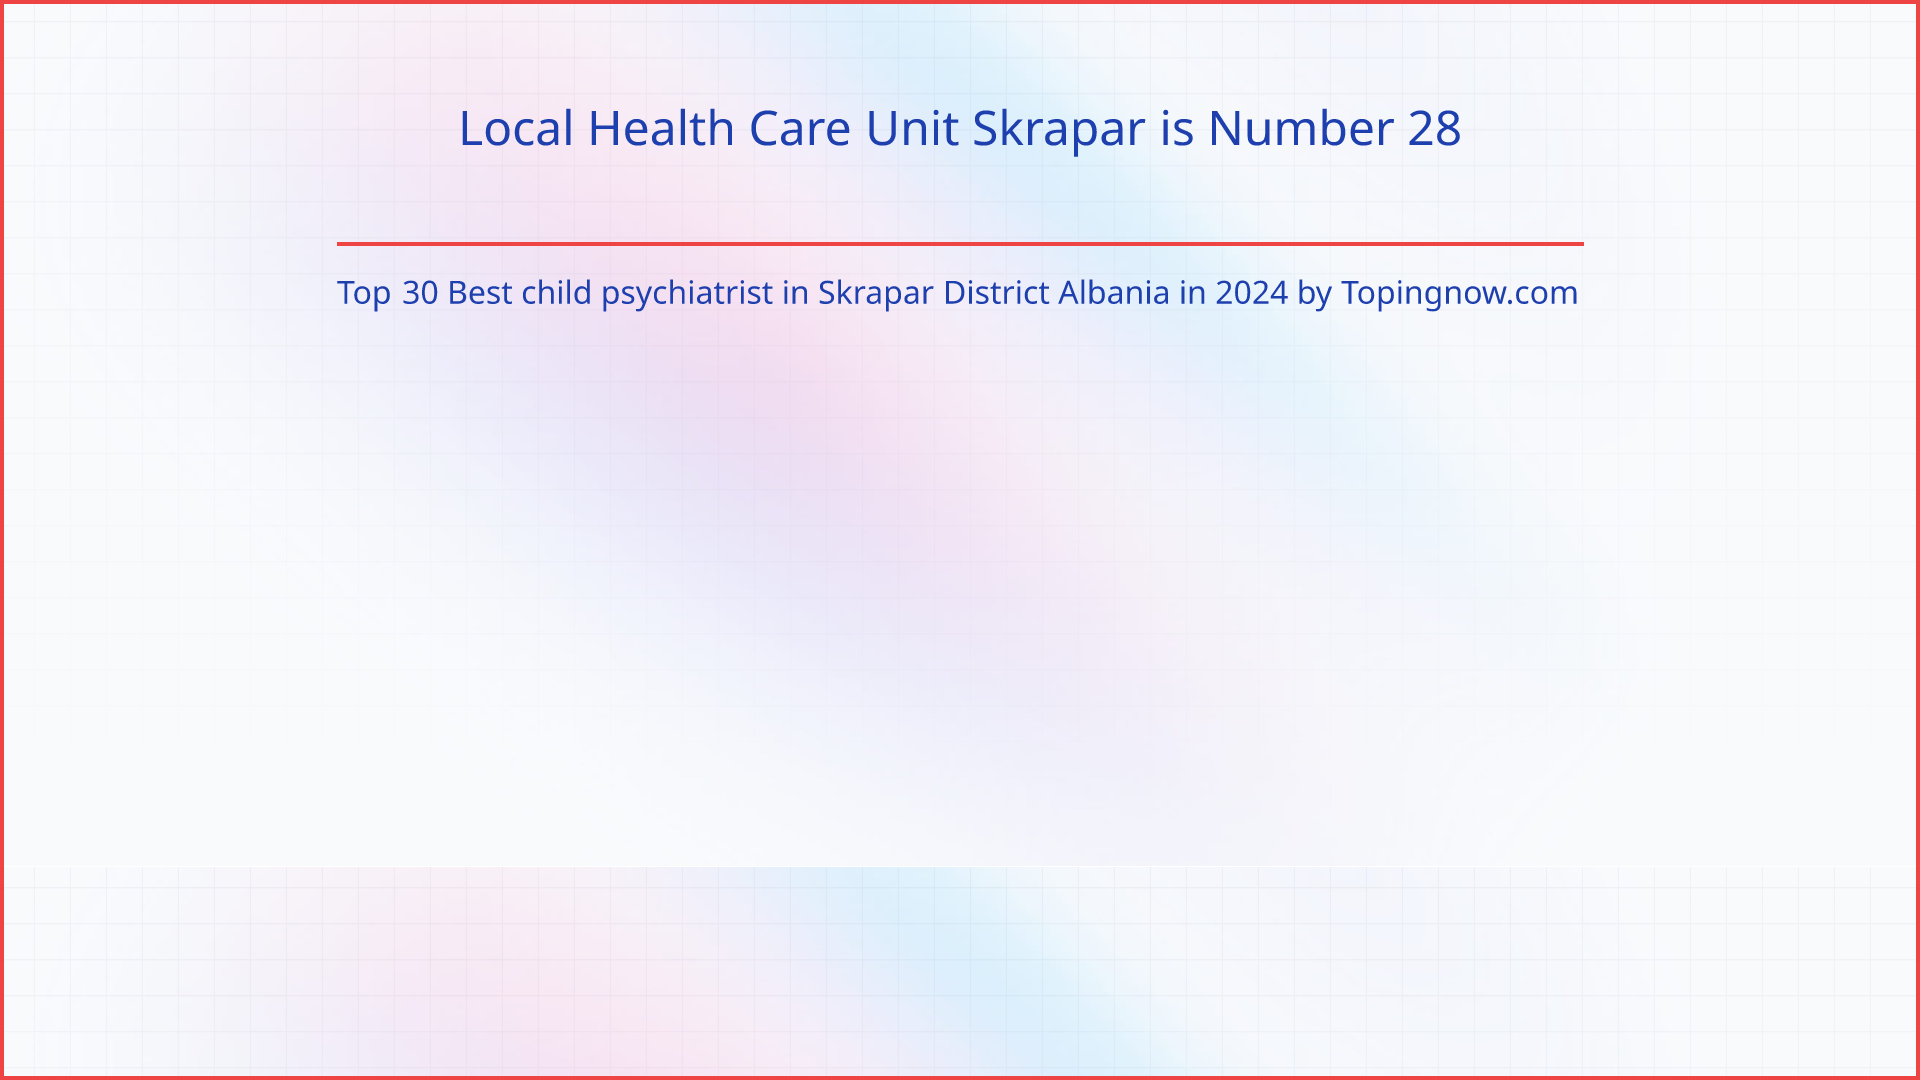 Local Health Care Unit Skrapar: Top 30 Best child psychiatrist in Skrapar District Albania in 2024